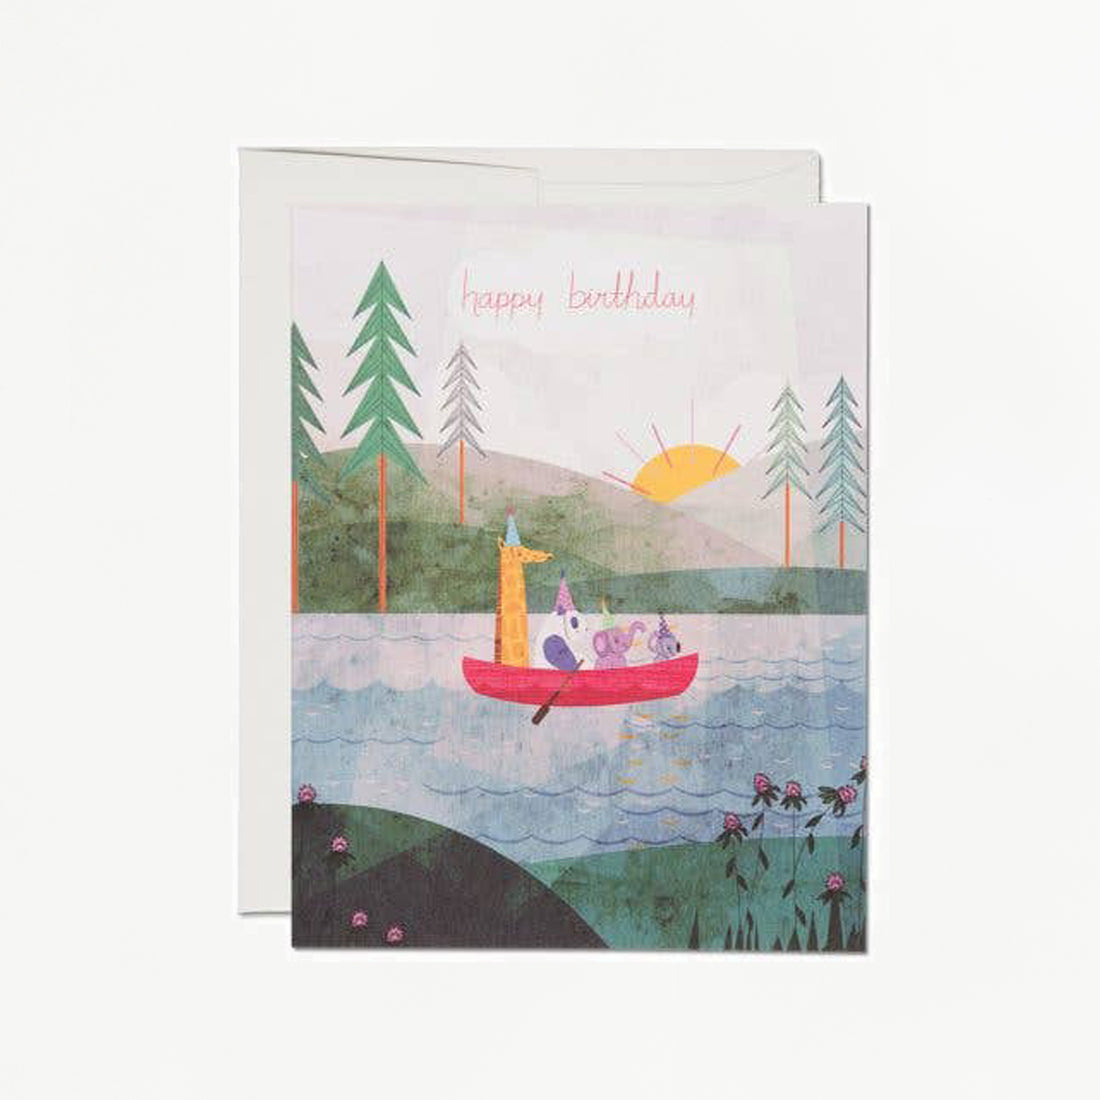 Four Canoe Birthday Card